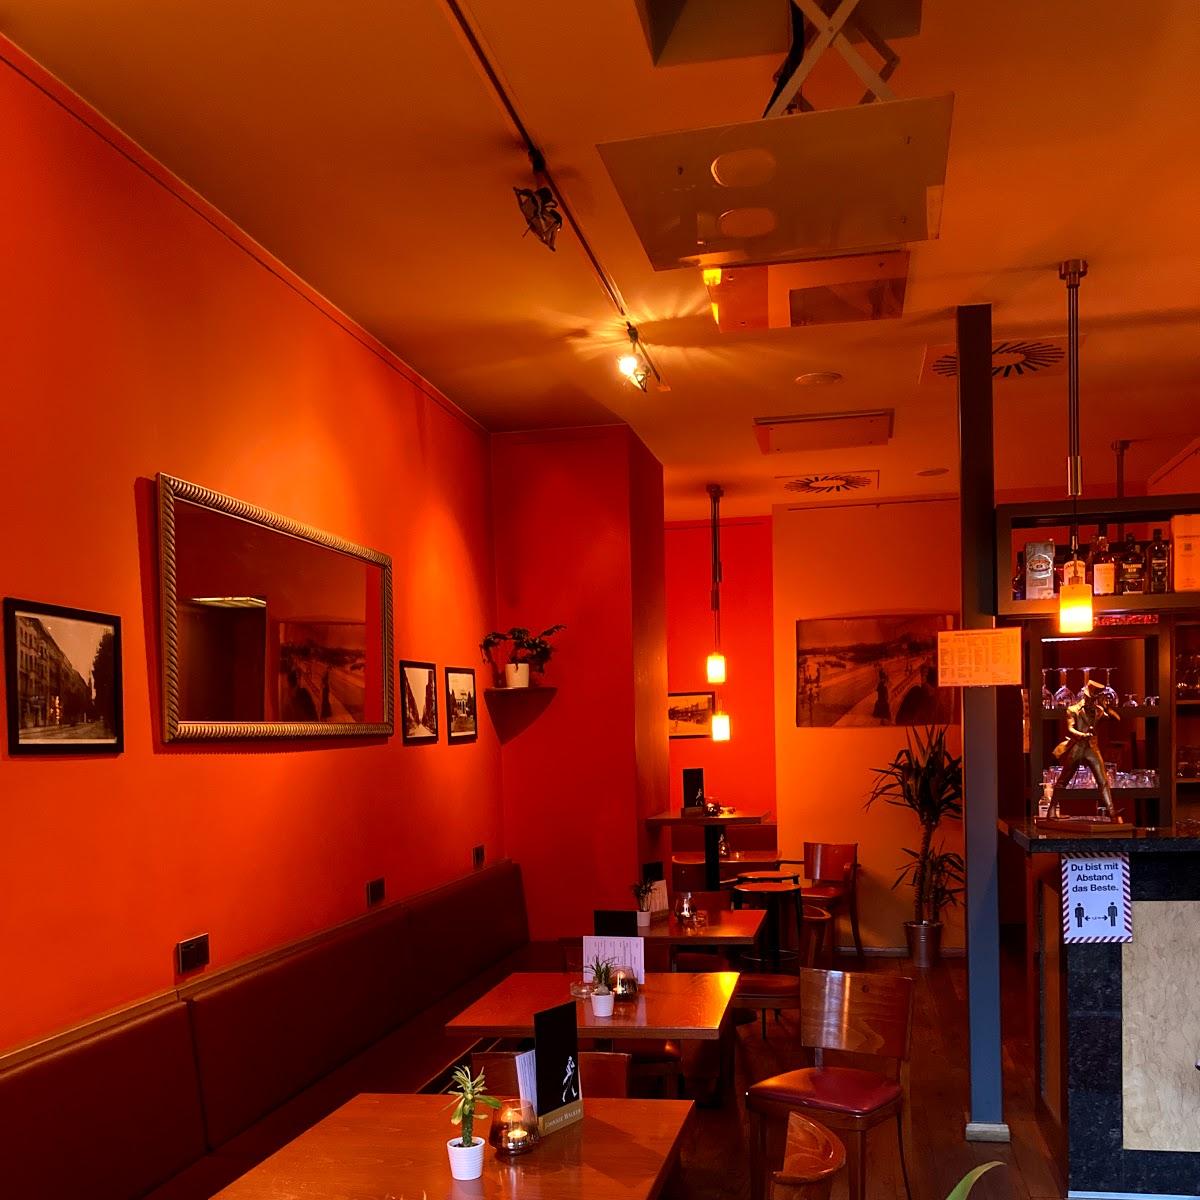 Restaurant "Tabar Bar" in Berlin